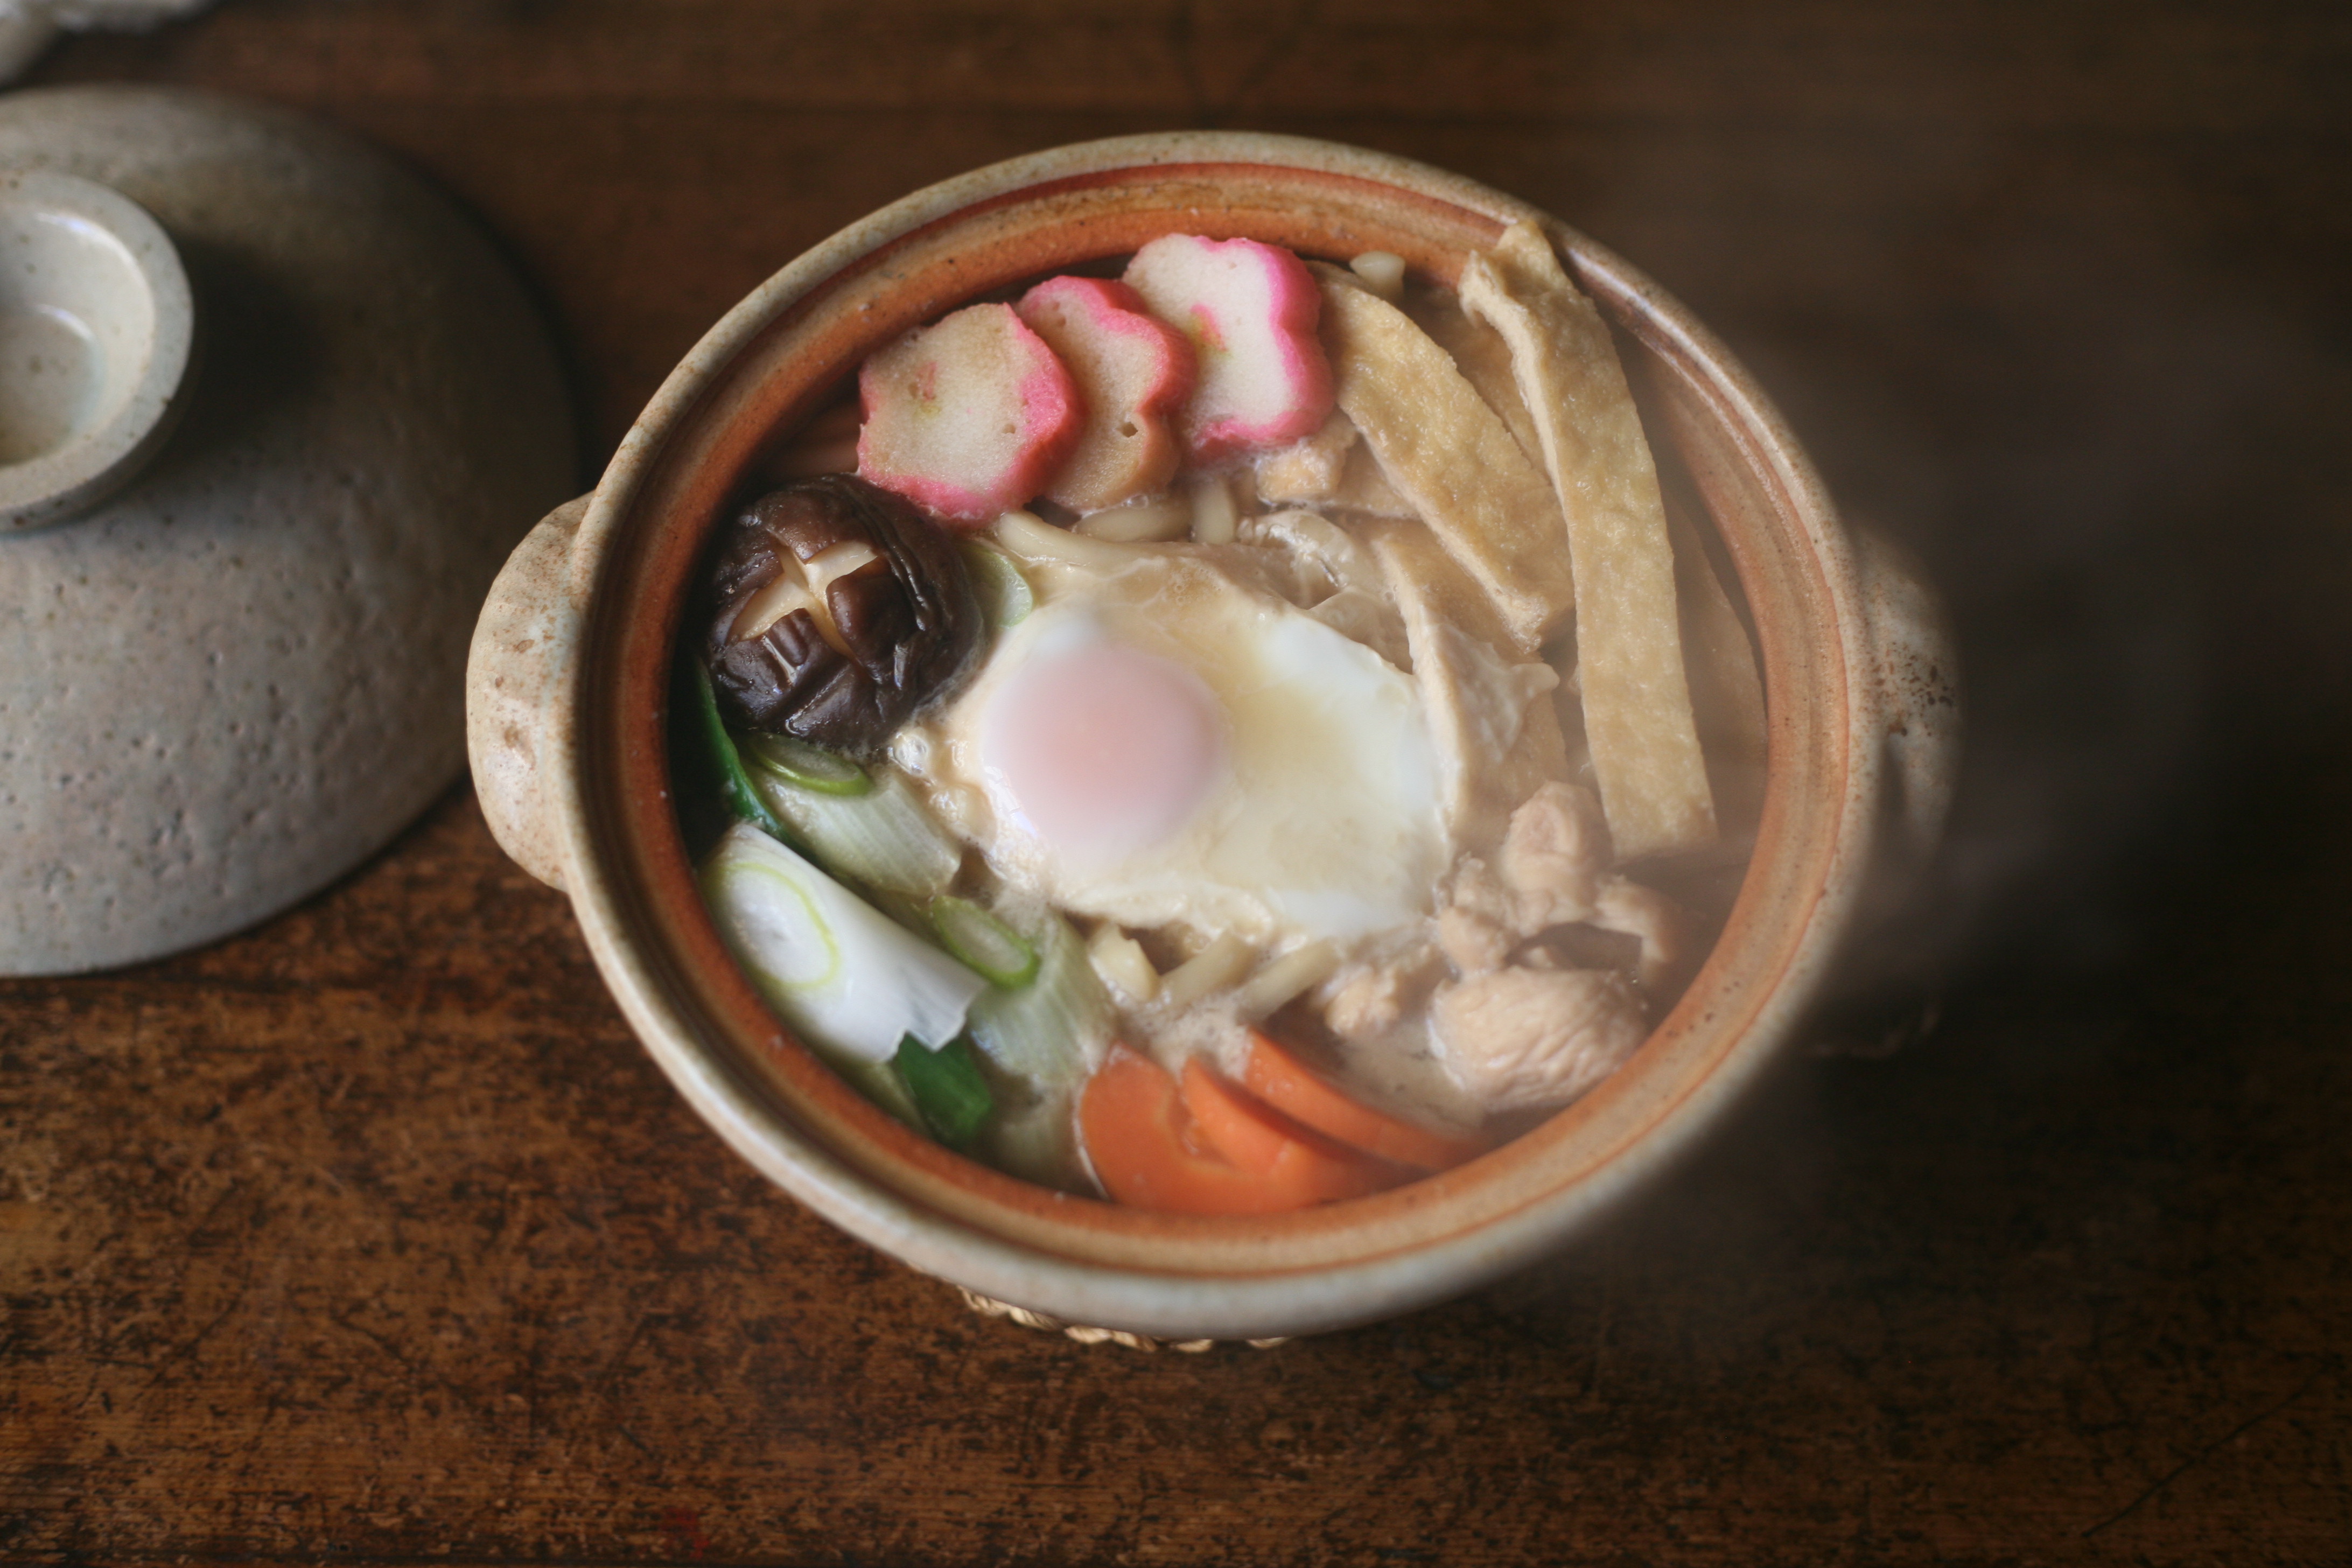 松山陶工場の土灰斑点土鍋で鍋焼きうどんを楽しんでみてはいかがでしょうか ほんのりとピンクがかった可愛らしい土鍋です 職人 Comブログ